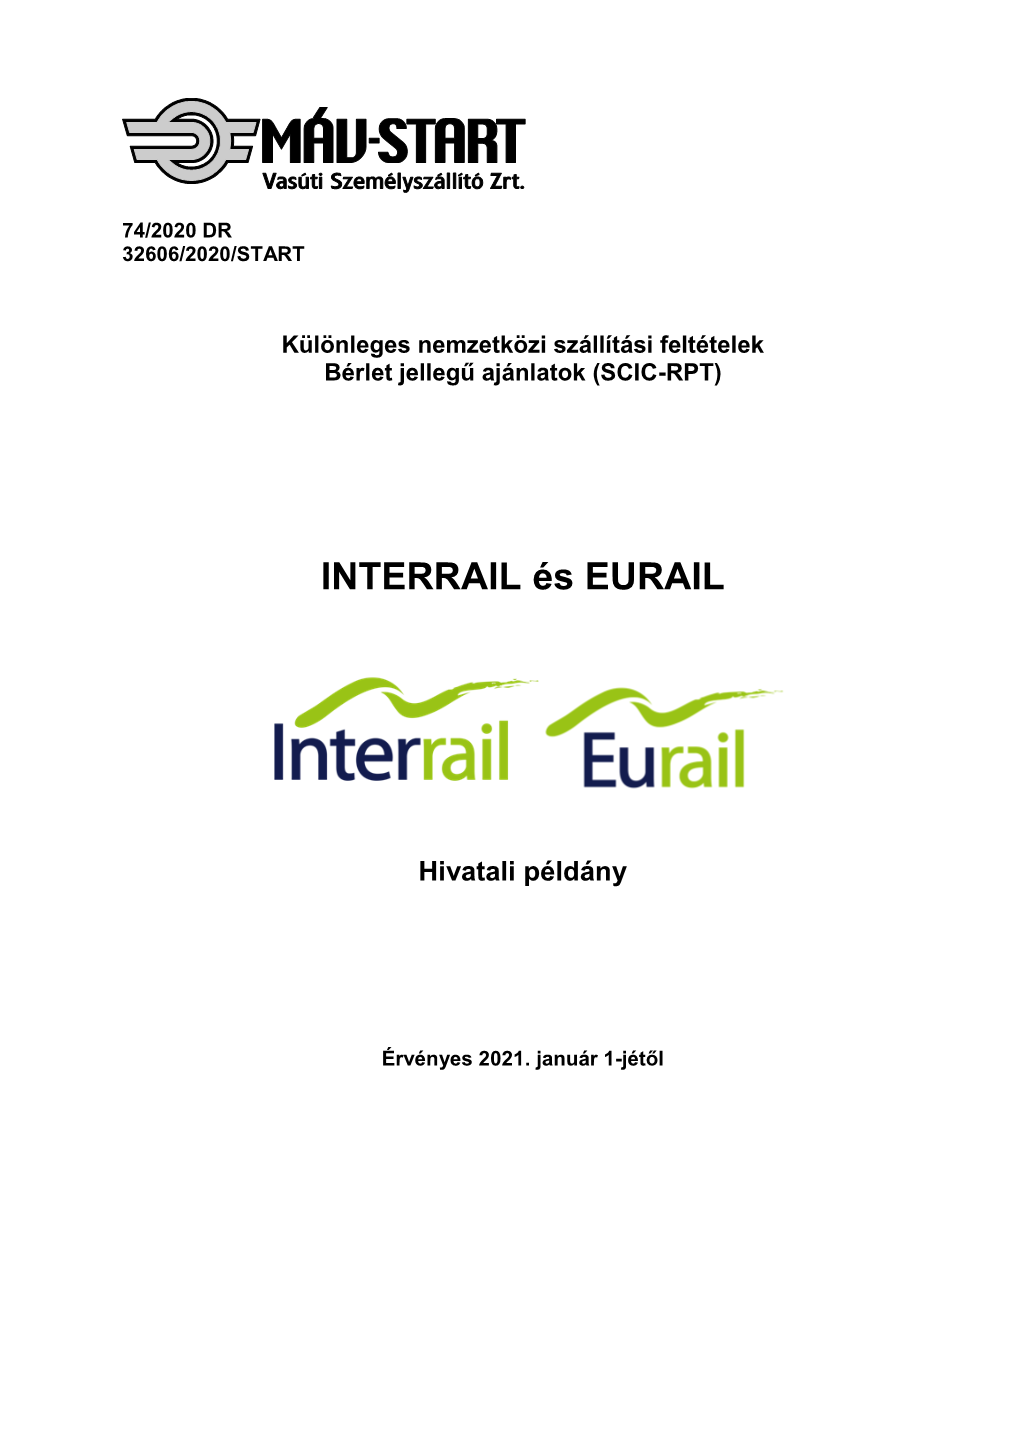 SCIC-RPT Interrail És Eurail Díjszabás 2021